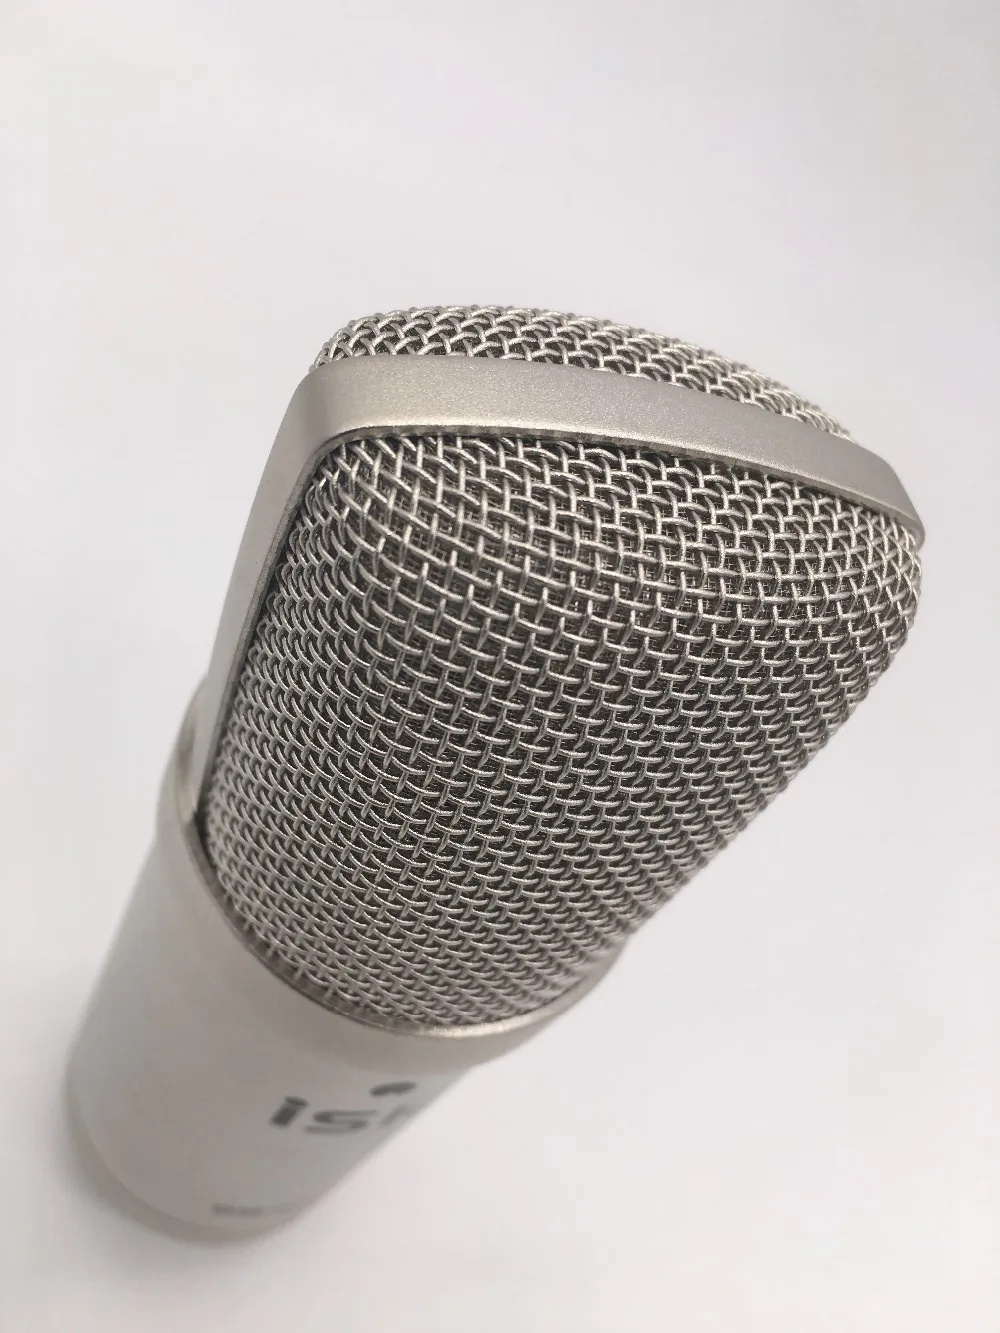 ISK BM-800 Профессиональный записывающий конденсаторный микрофон компьютерная сеть караоке микрофон для создания музыки, студии и вещания